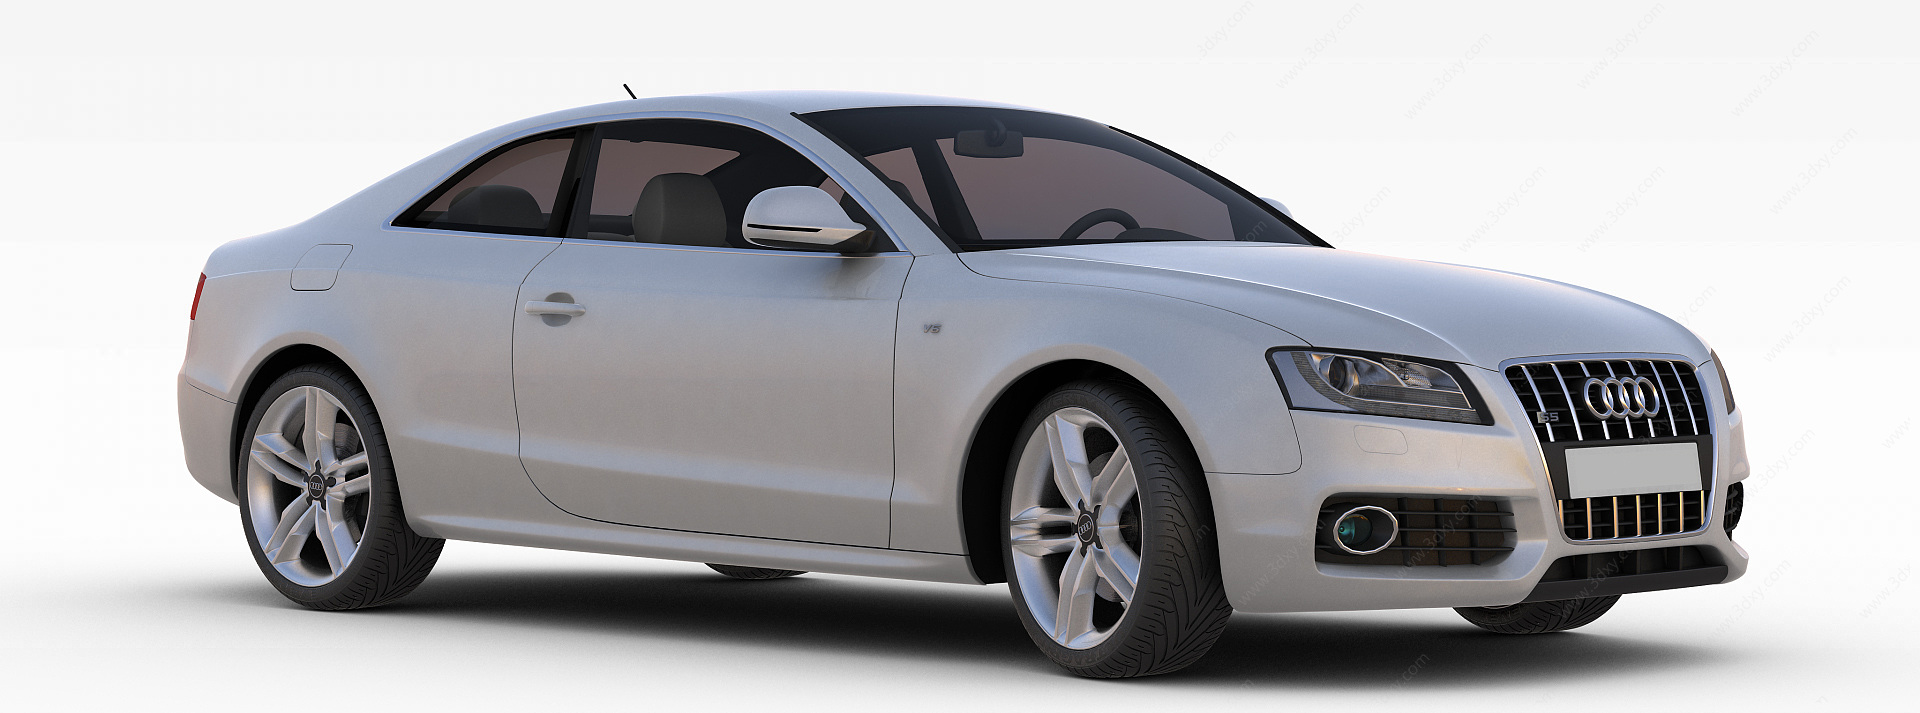 奥迪银色汽车3D模型